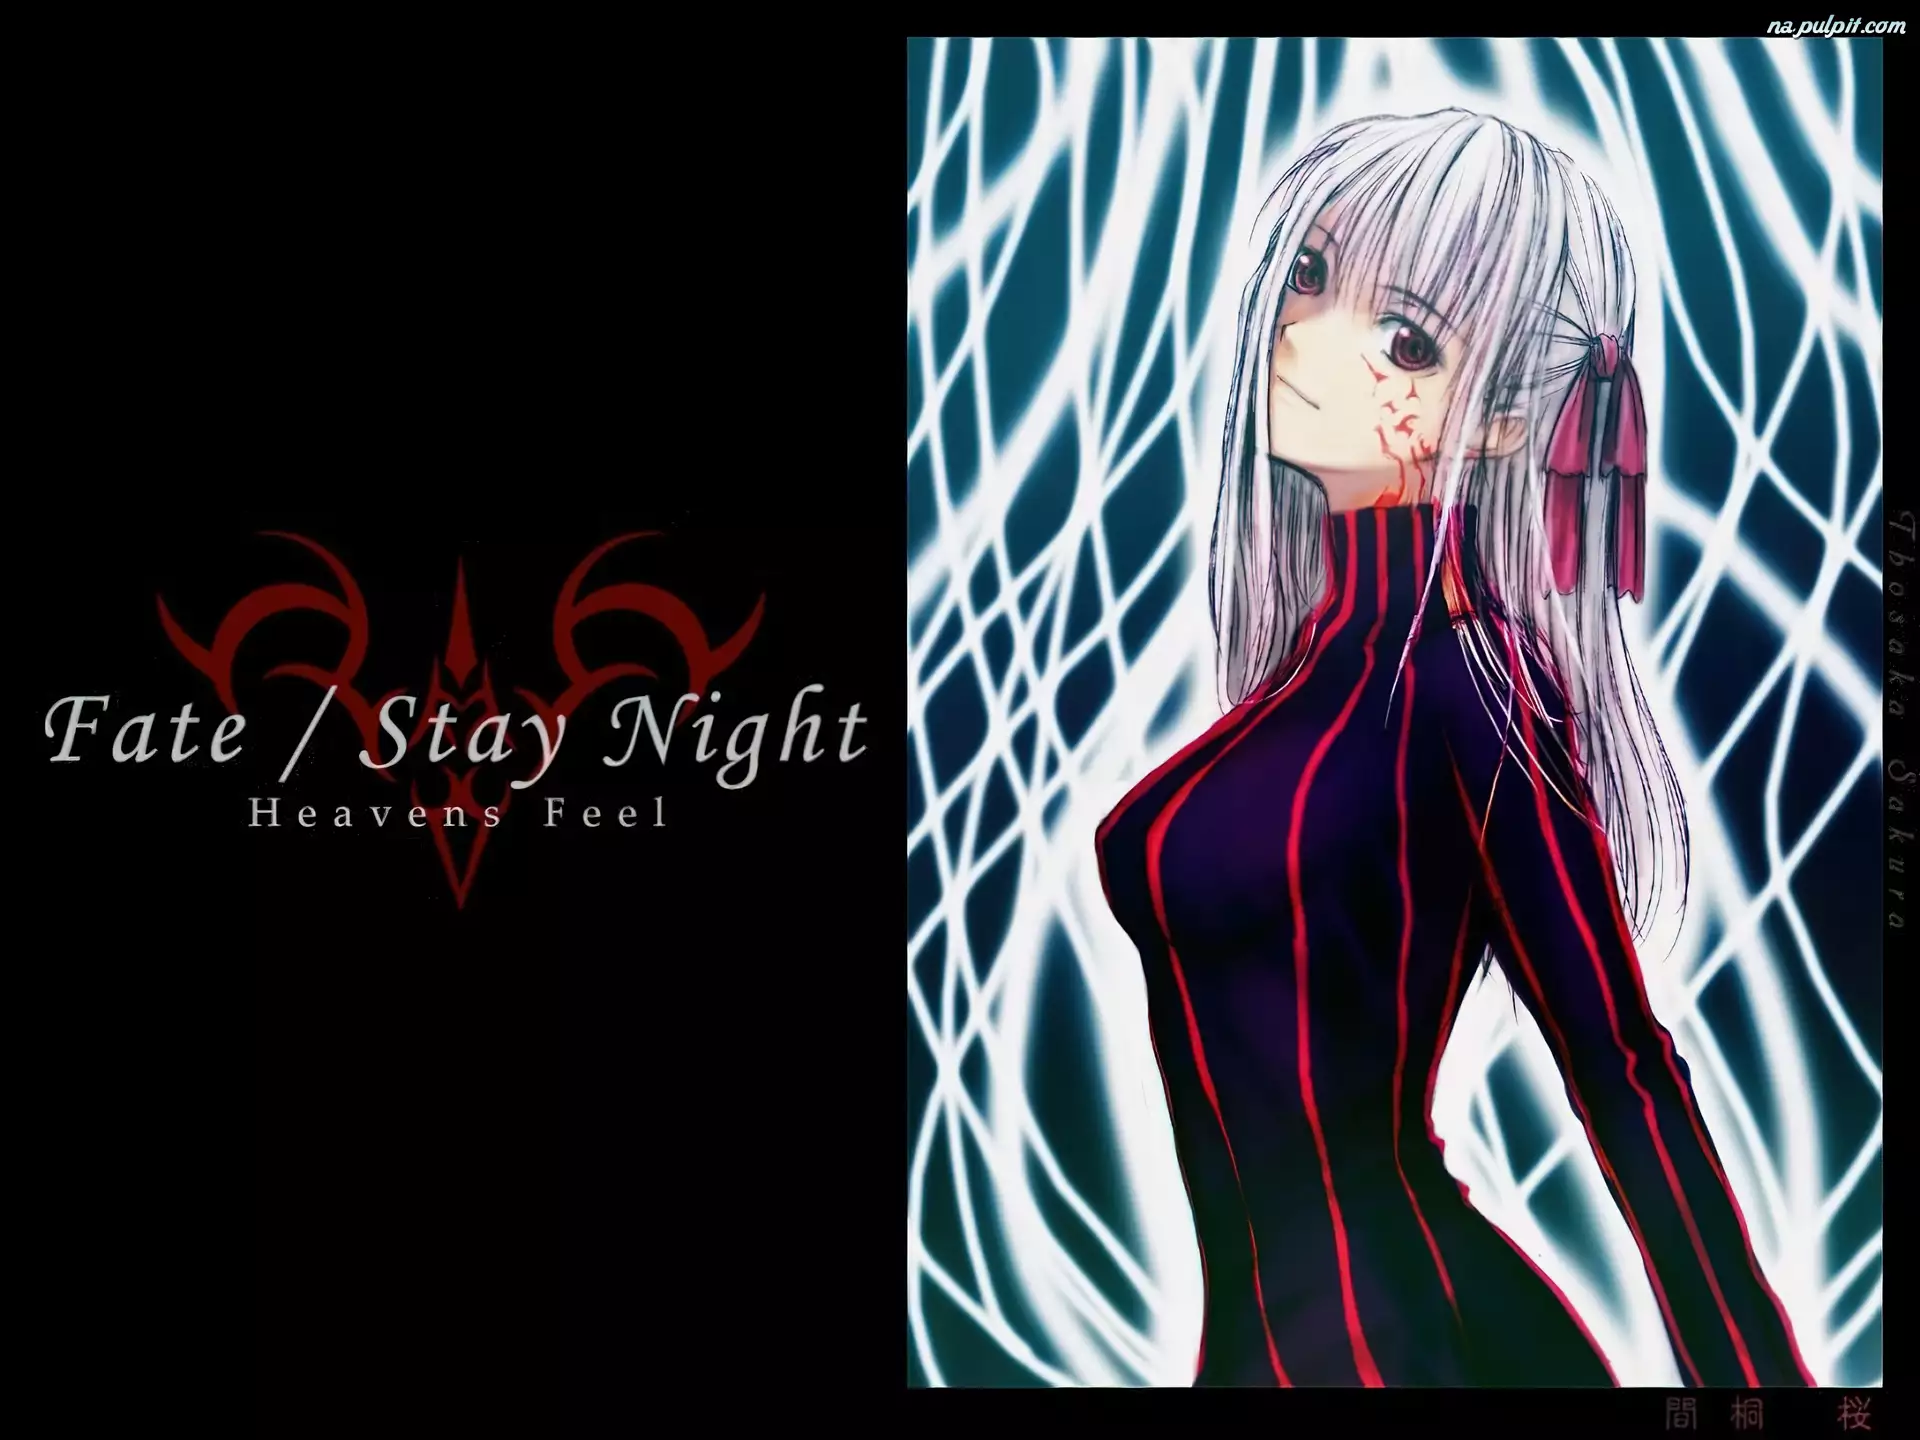 dziewczyna, profil, Fate Stay Night, napis